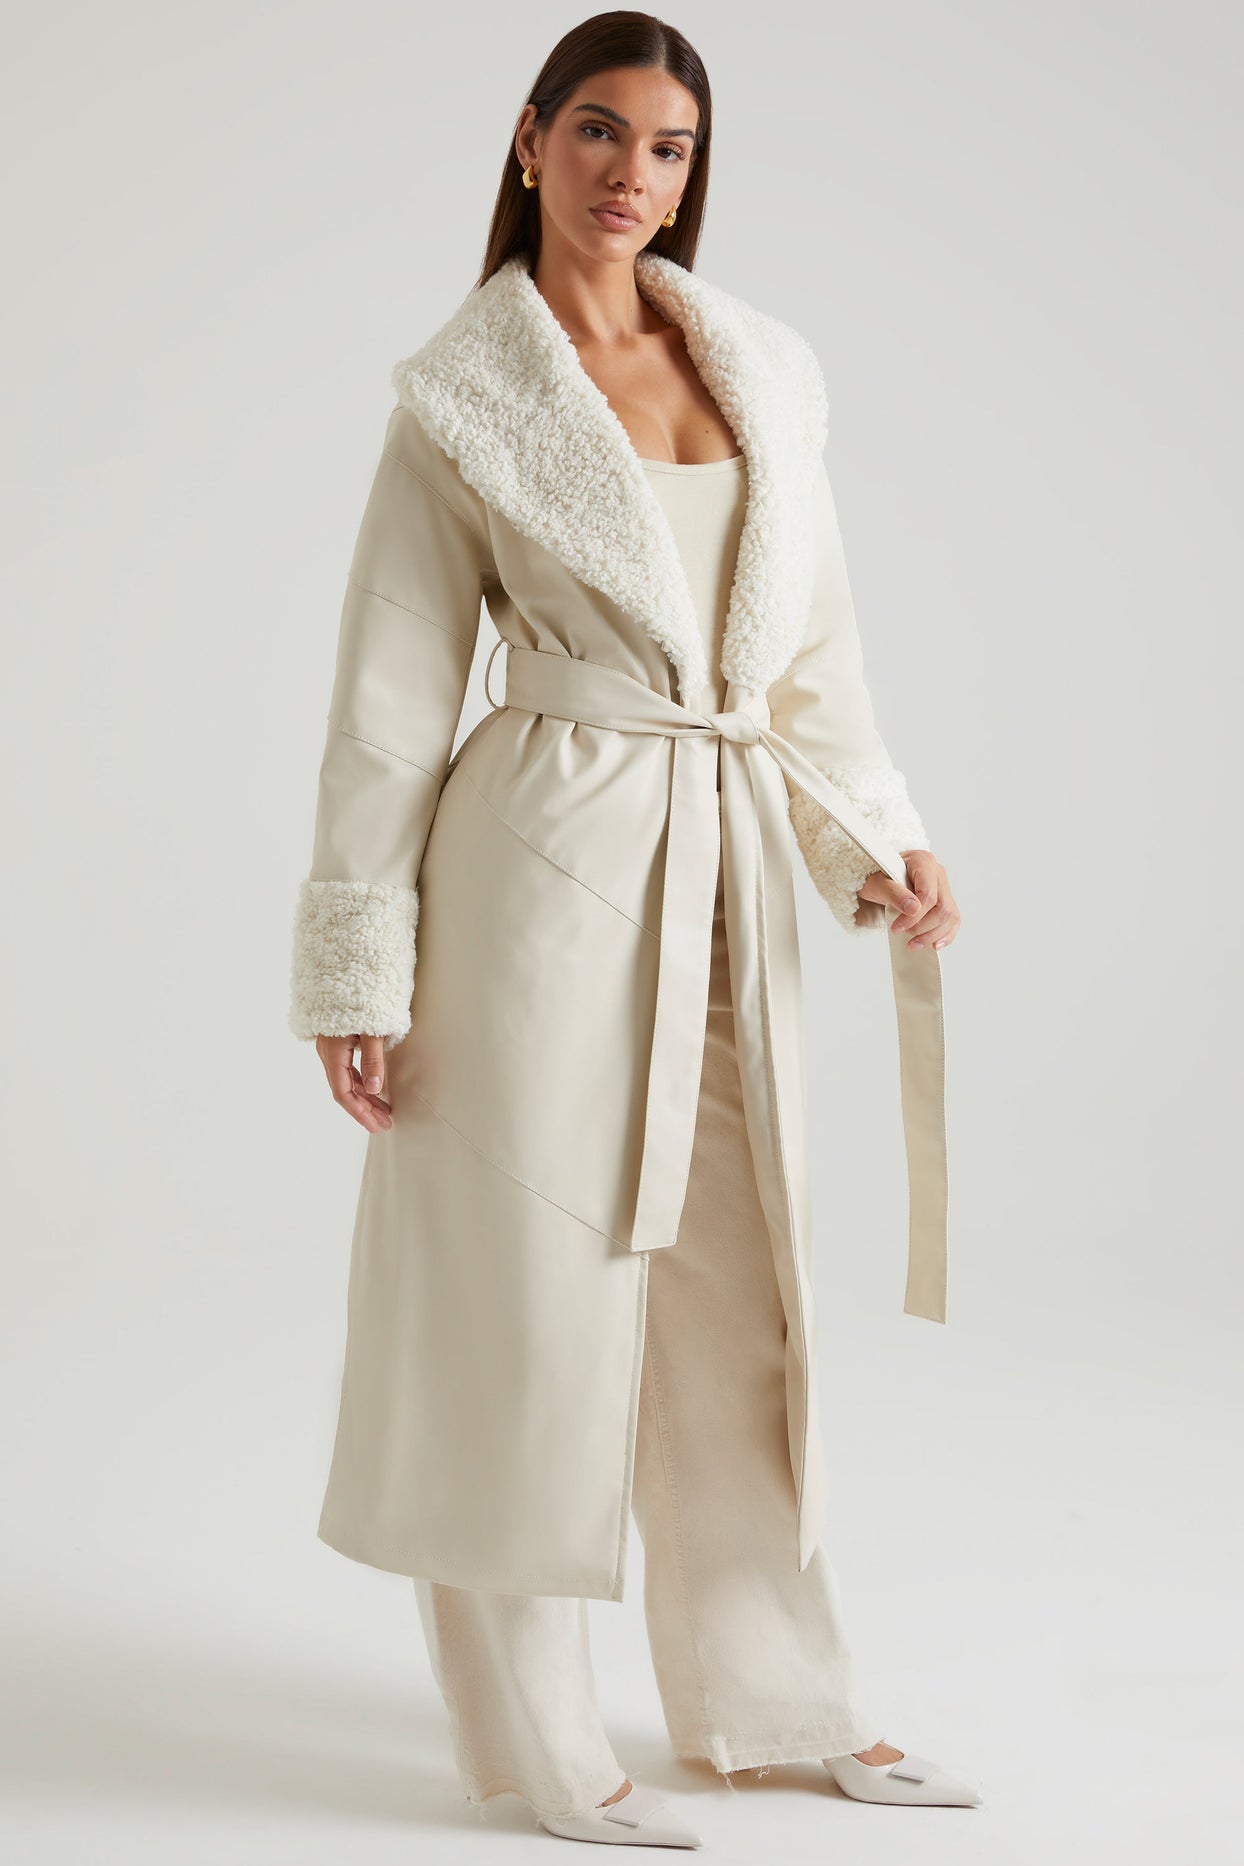 Abrigo anudado con cuello y puños de piel de oveja en color crema